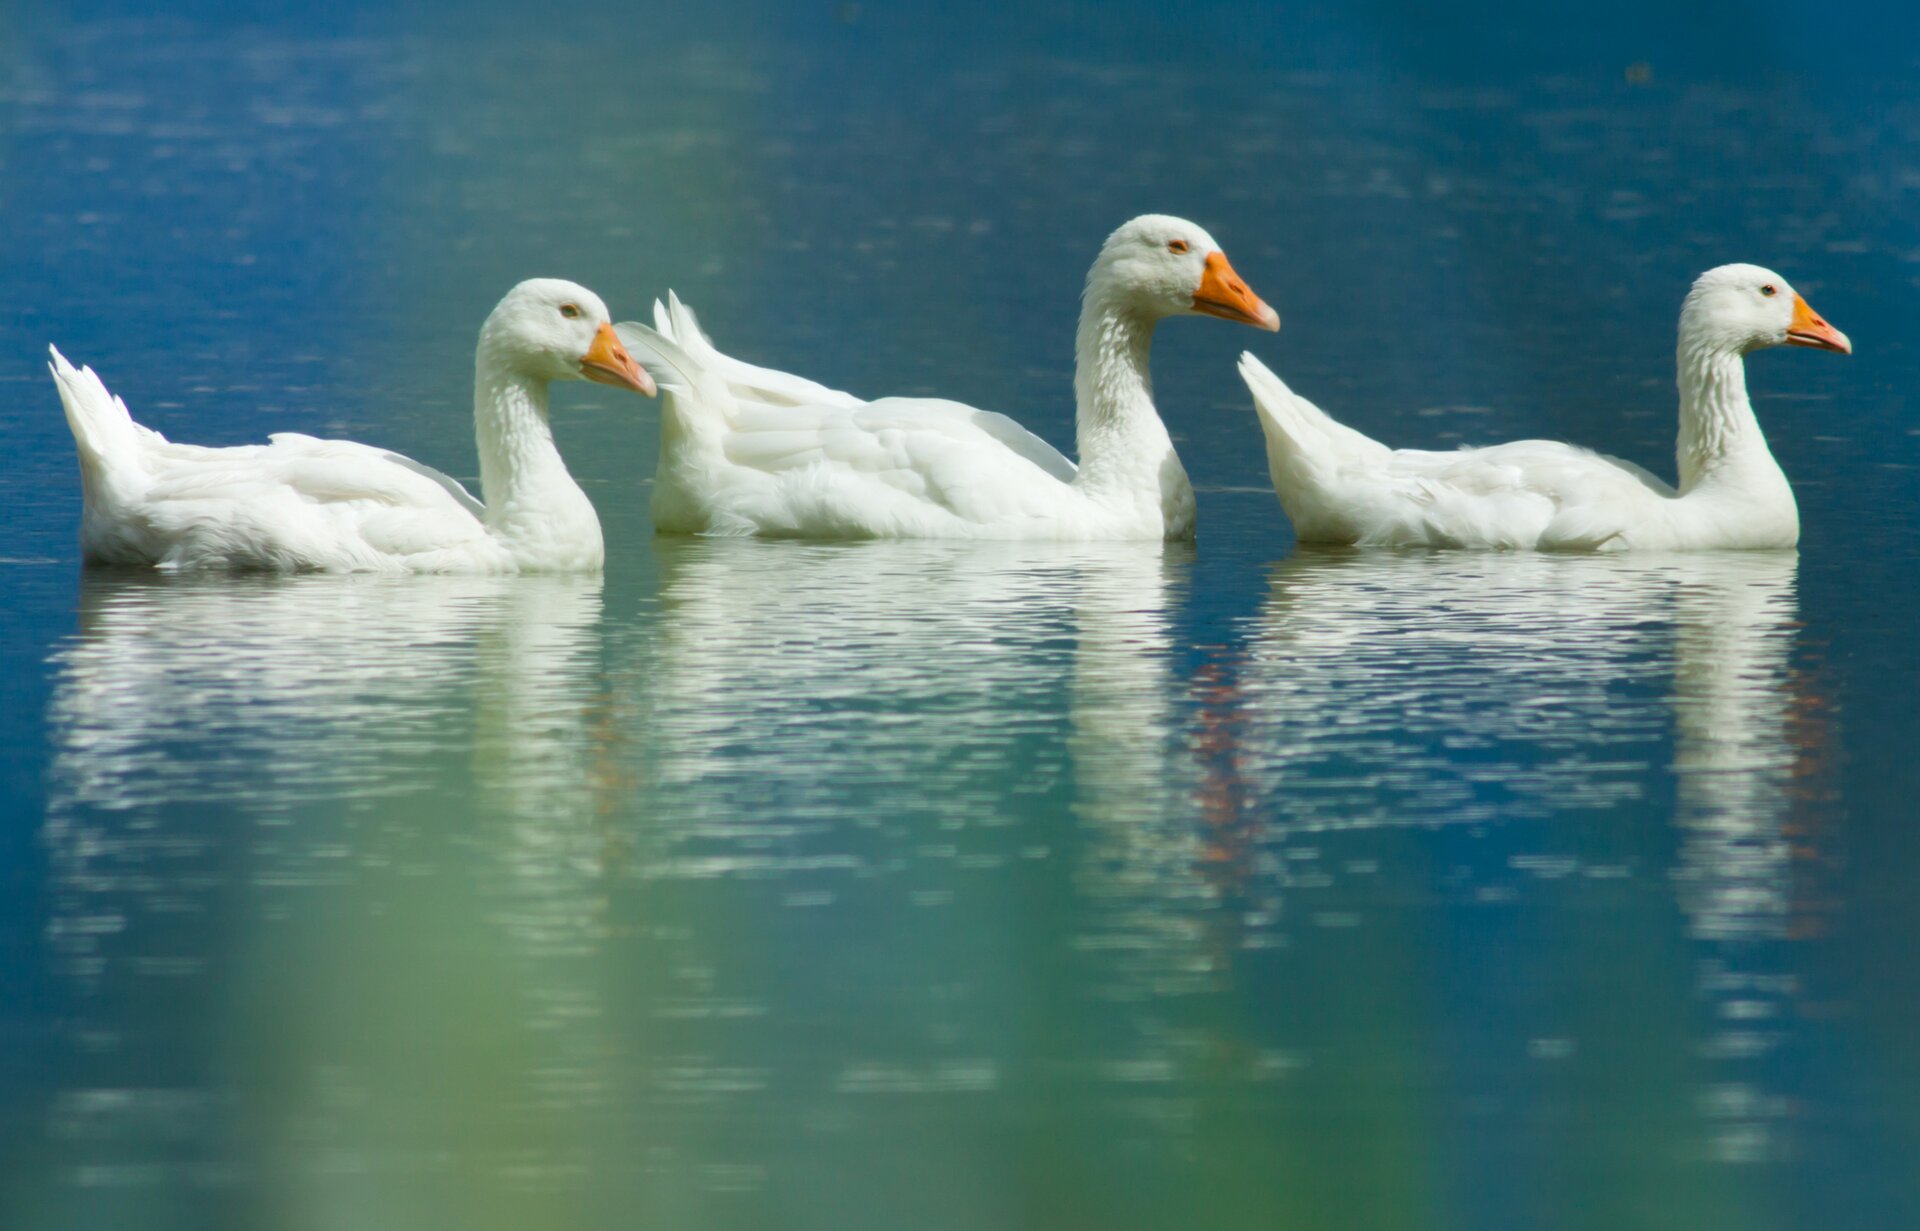 Kolorowa fotografia przedstawia 3 białe gęsi płynące jedna za drugą. Widzimy je z boku, ustawione dziobami w prawą stronę. Woda jest spokojna, widać w niej niewyraźne odbicia ptaków.